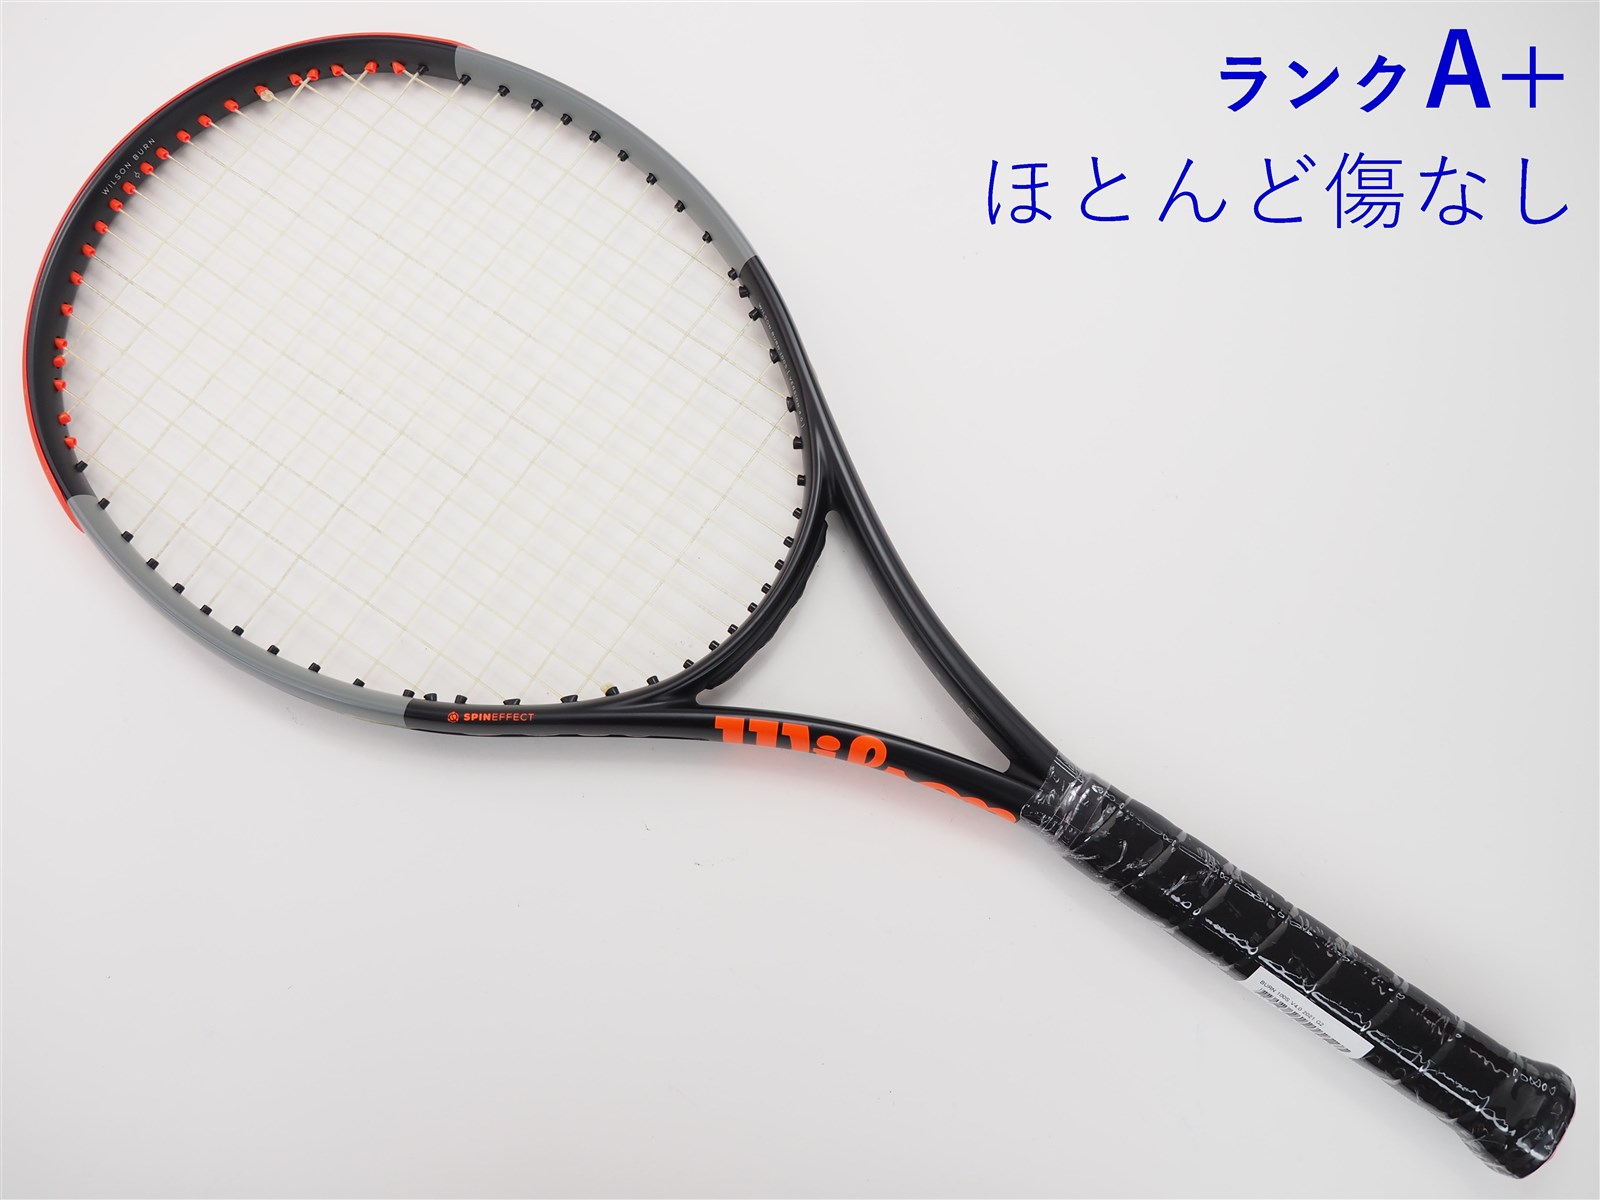 テニスラケット ウィルソン バーン 100エス バージョン4.0 2021年